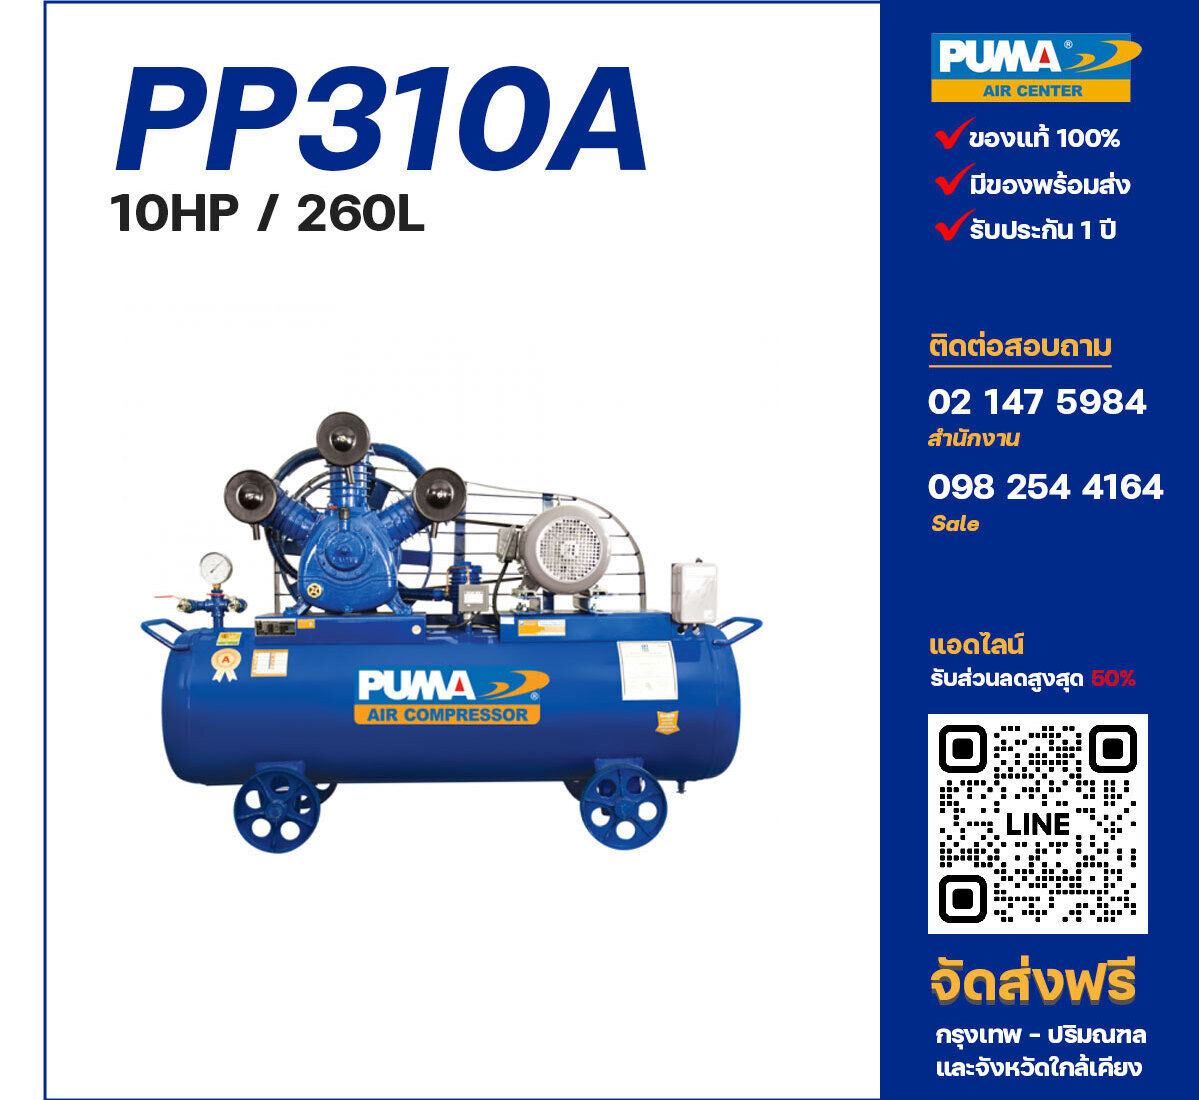 ปั๊มลมพูม่า PUMA PP310A-PPM380V ปั๊มลมลูกสูบ ขนาด 3 สูบ 10 แรงม้า 260 ลิตร PUMA พร้อมมอเตอร์ PUMA ไฟ 380V ส่งฟรี กรุงเทพฯ-ปริมณฑล รับประกัน 1 ปี